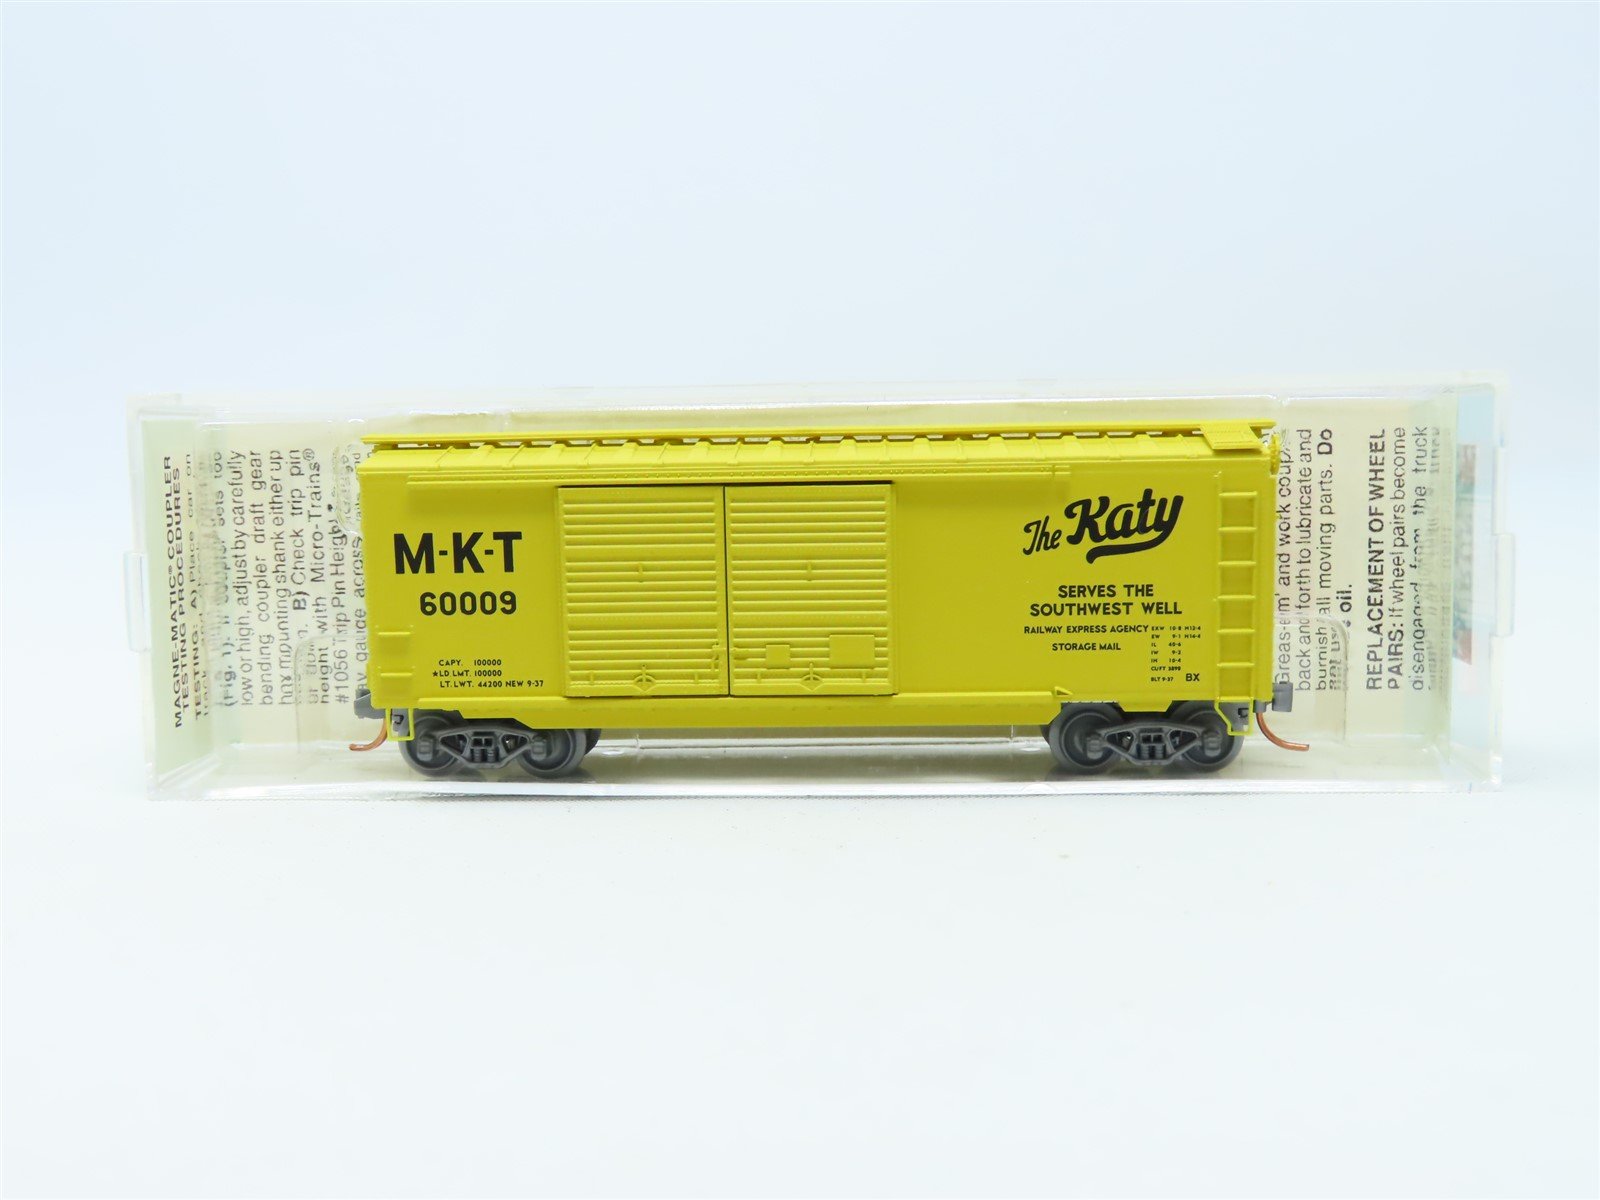 N Micro-Trains MTL NSC 03-51 2003 Surprise Car MKT "The Katy" 40' Box Car #60009